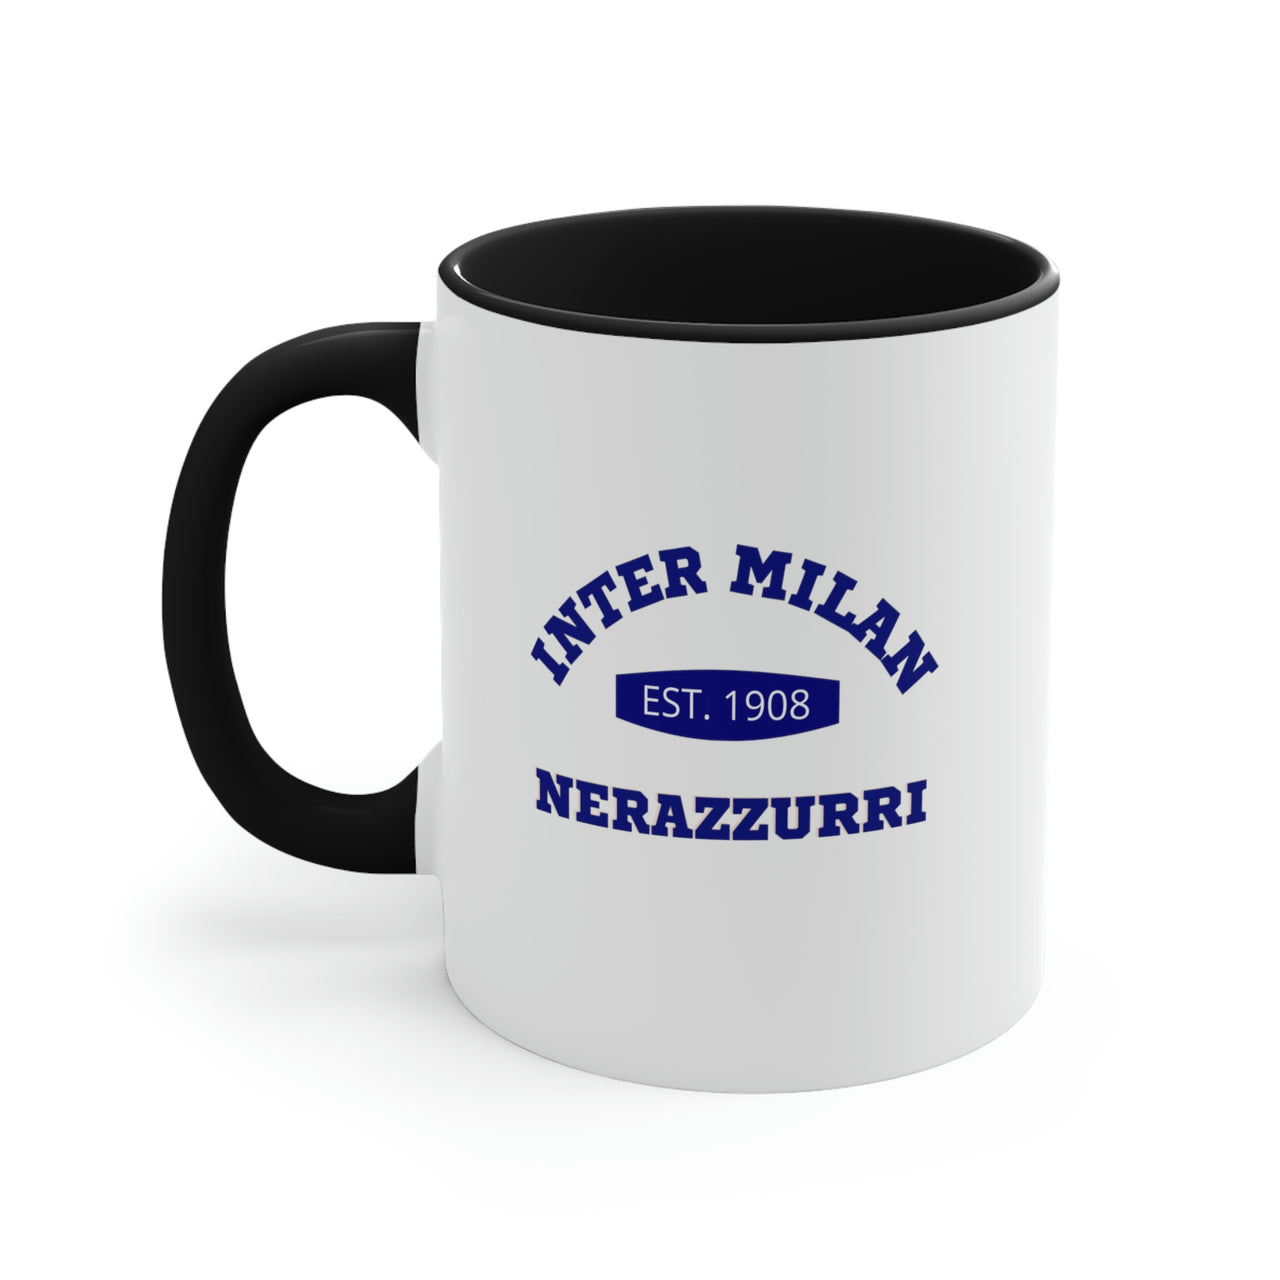 Inter Milan Coffee Mug, 11oz